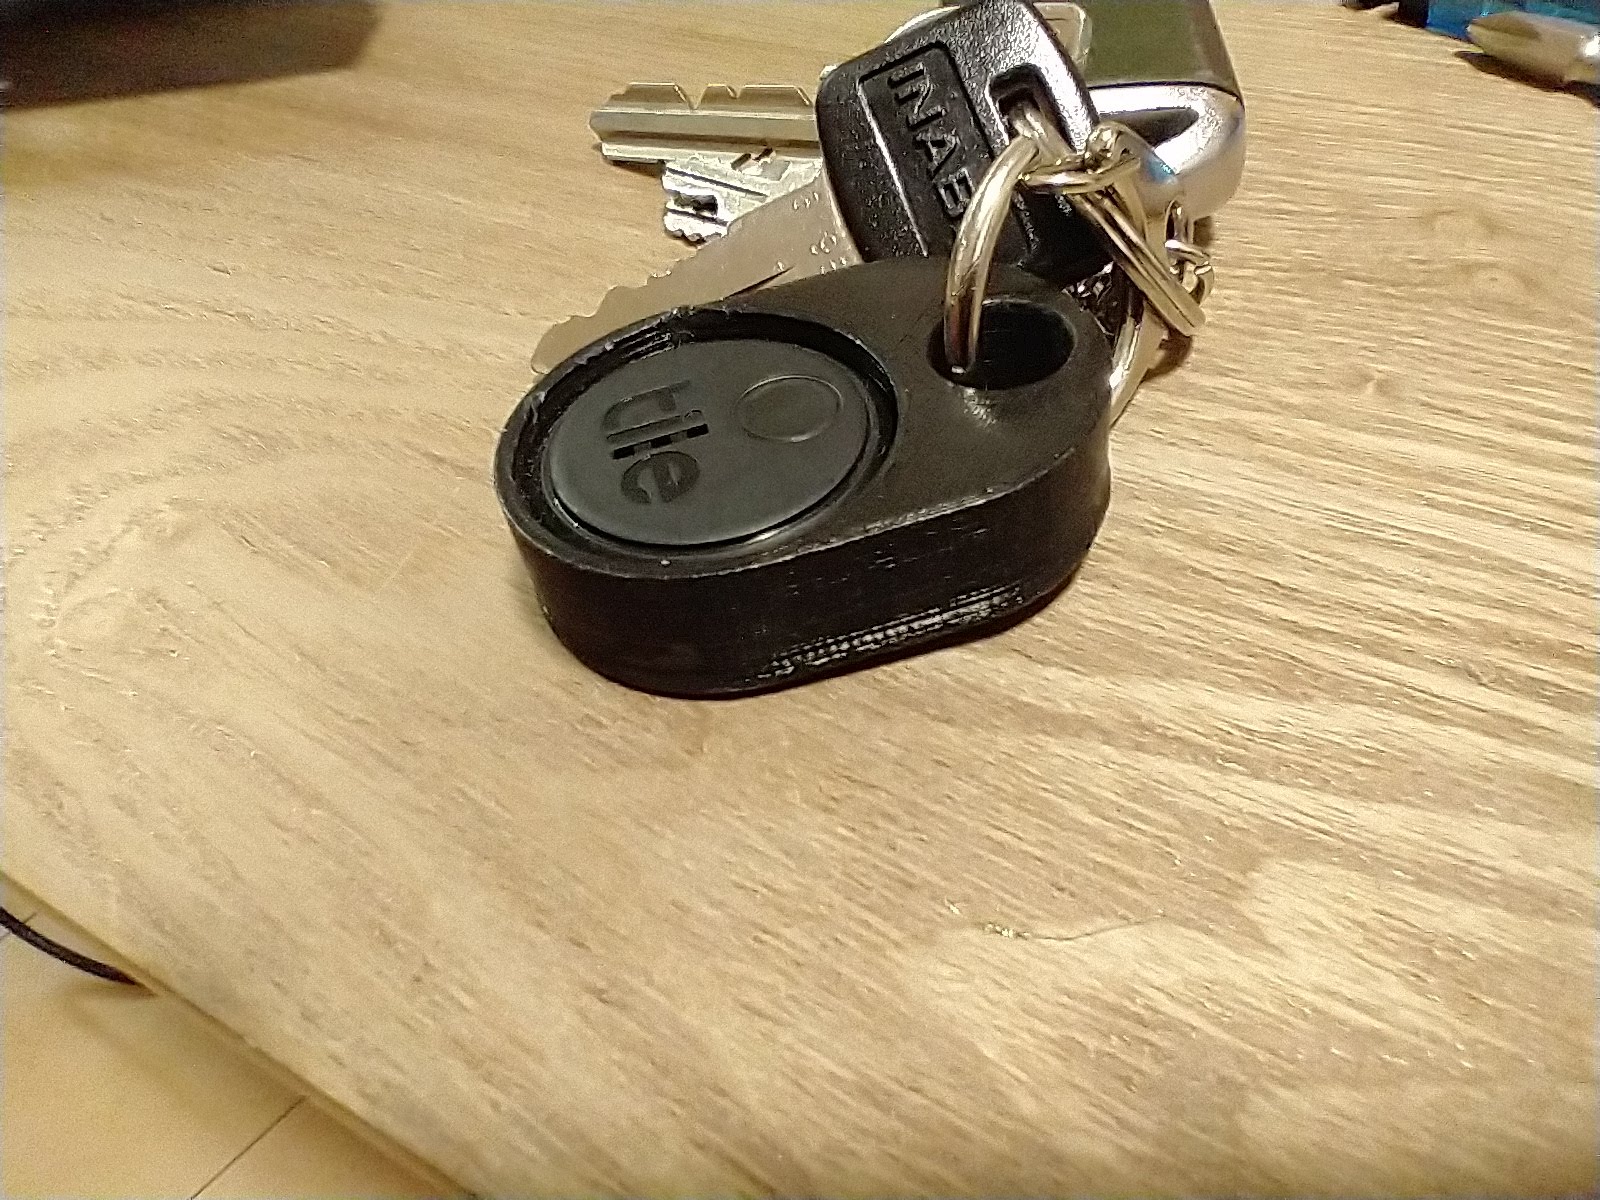 Tile sticker keychain